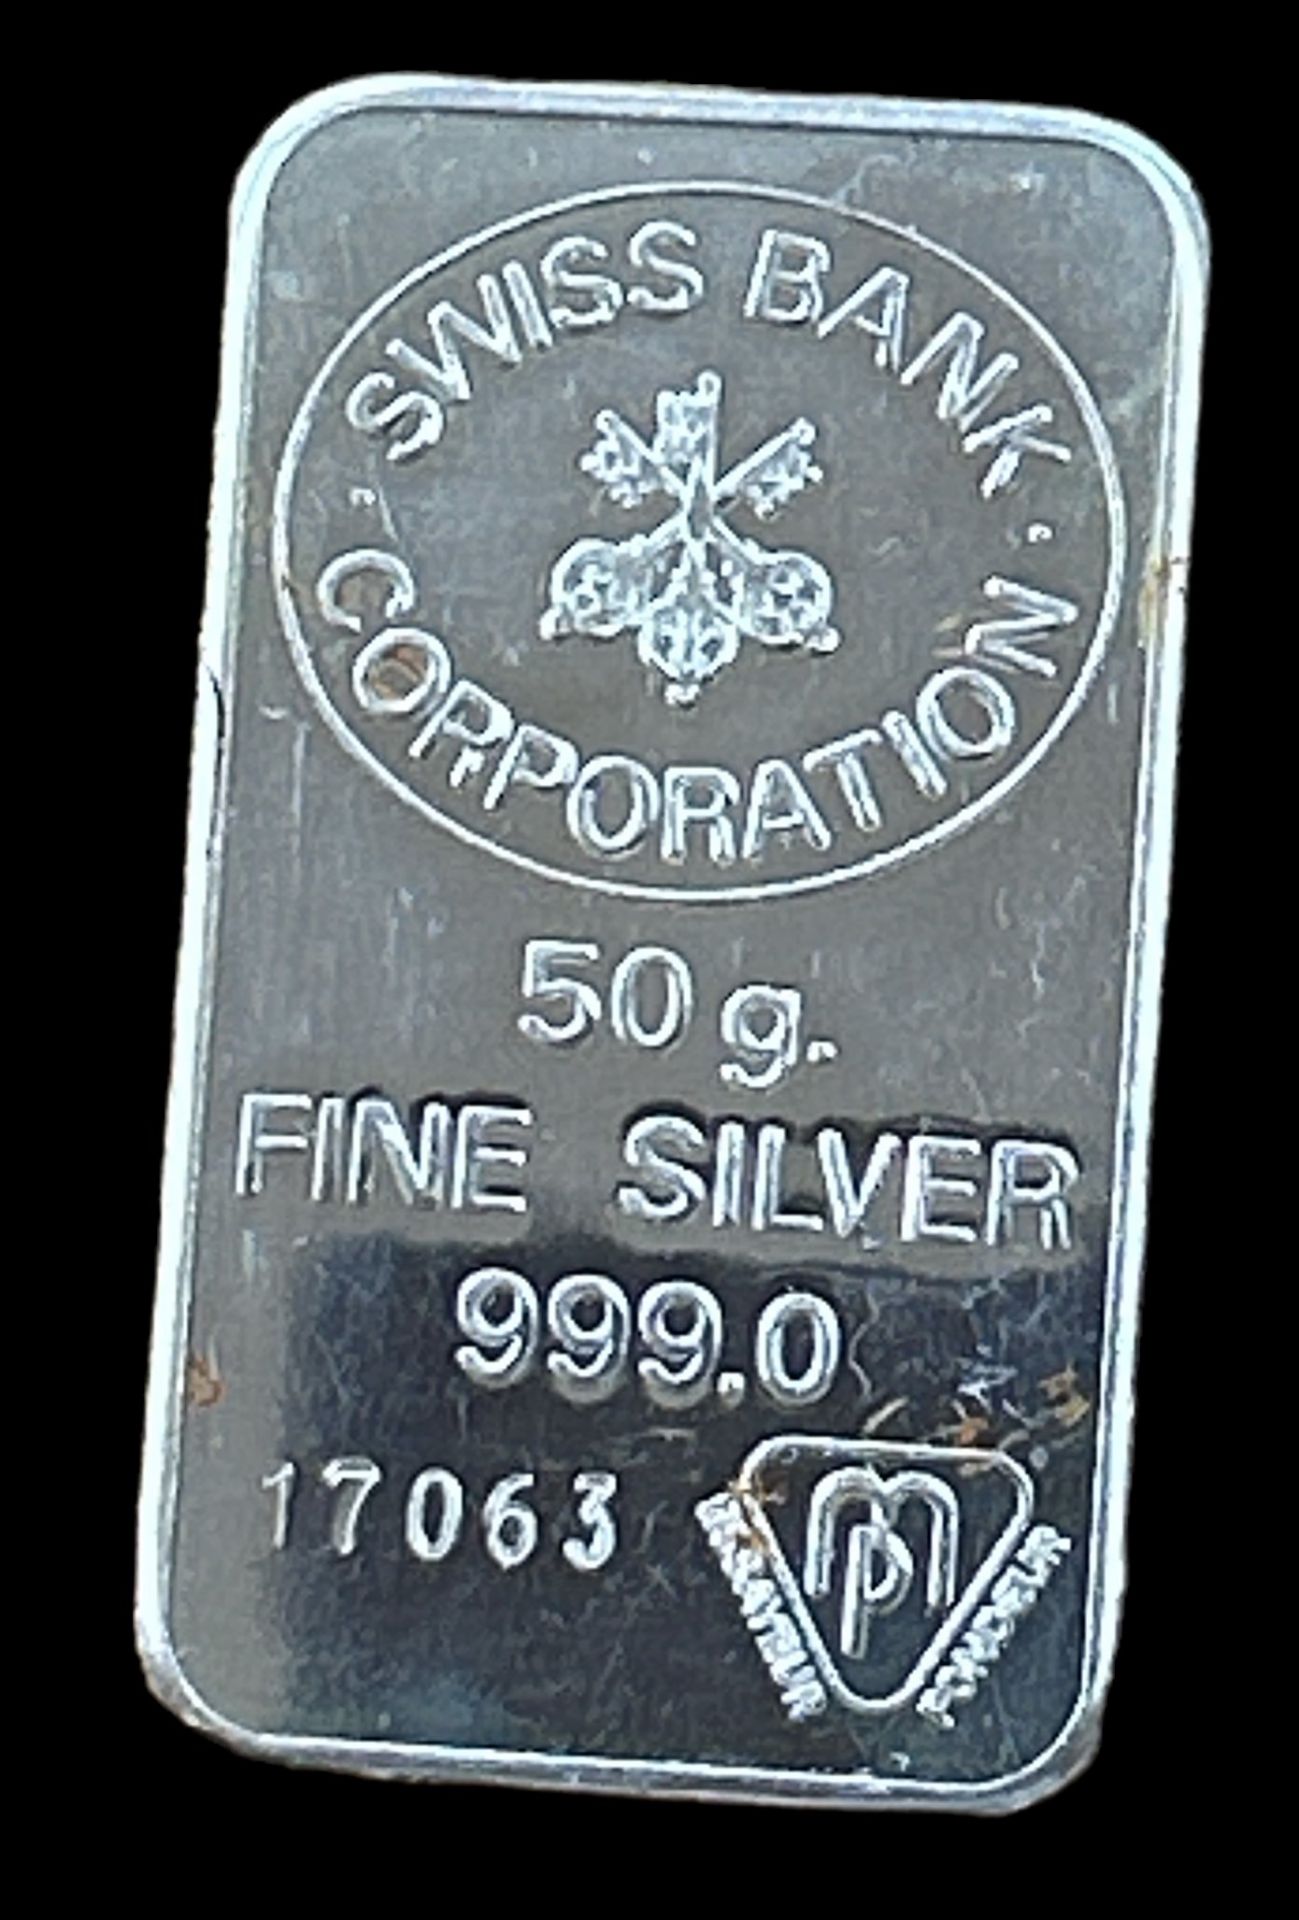 Feinsilberbarren-999- Swiss Bank Corporation, 50 g